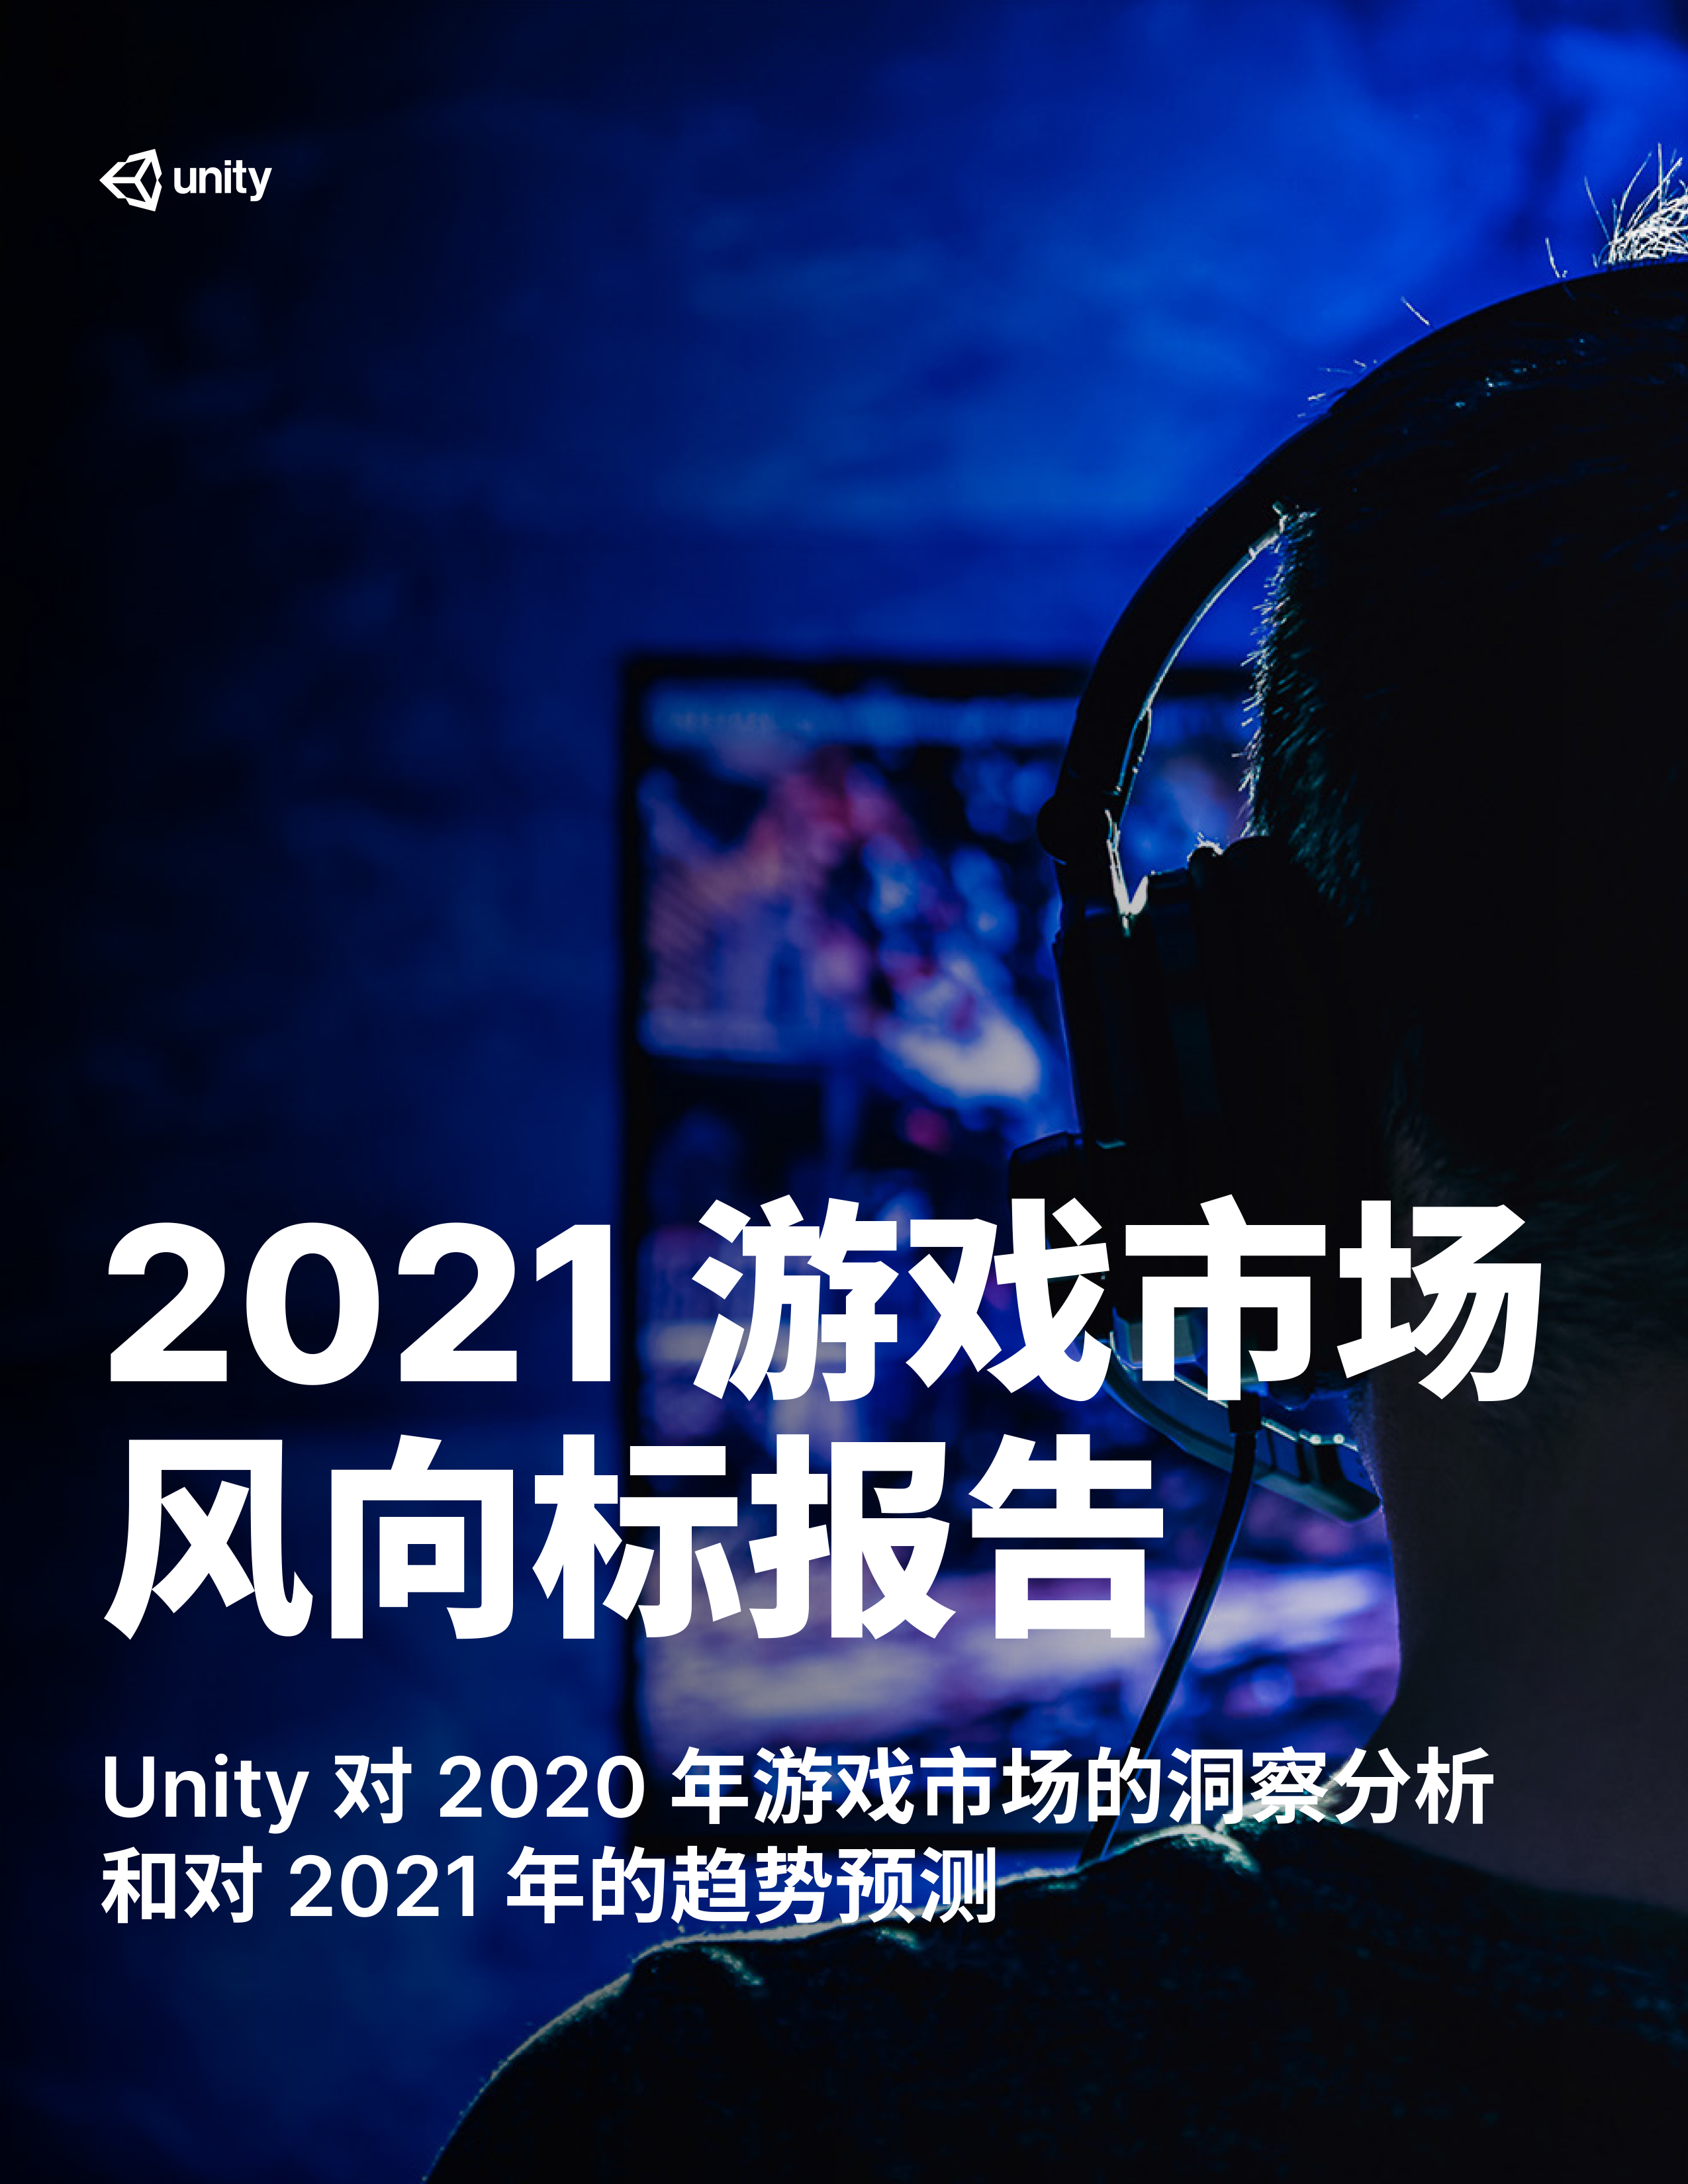 Unity：工作日摸鱼玩游戏的人在增多，预计今年跨平台游戏数量提升